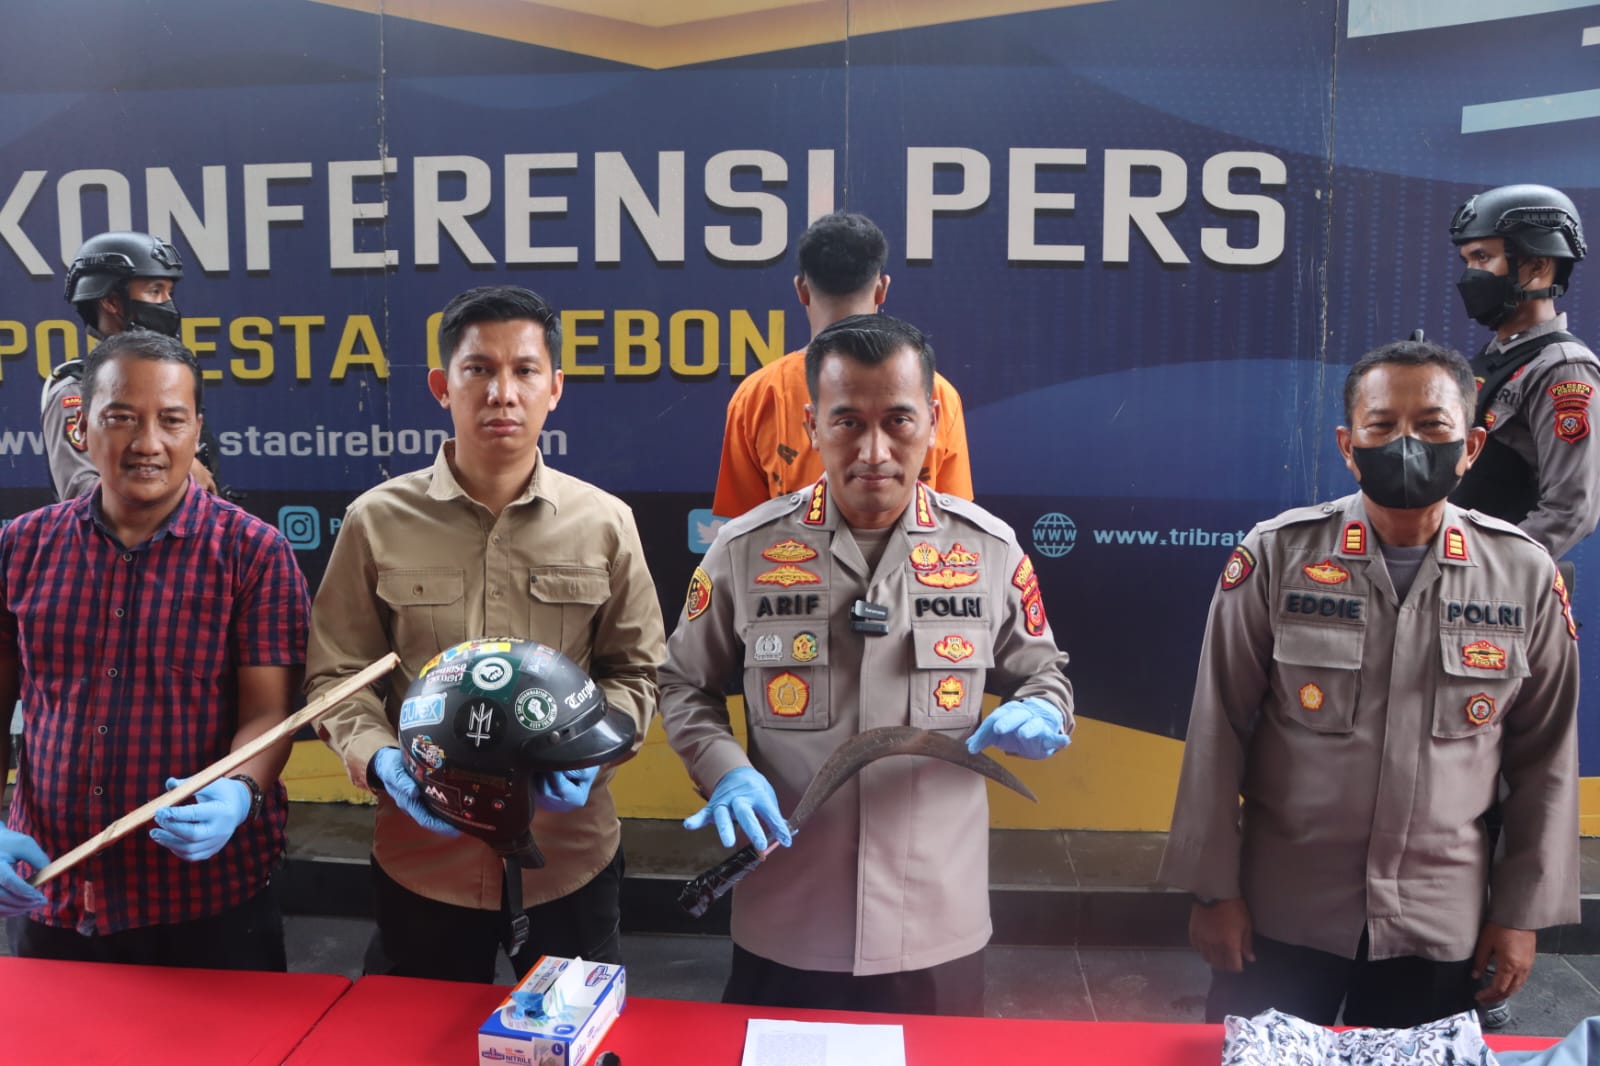 Kapolresta Cirebon menunjukkan barang bukti penganiayaan yang dilakukan oleh pelajar di Watubelah Sumber